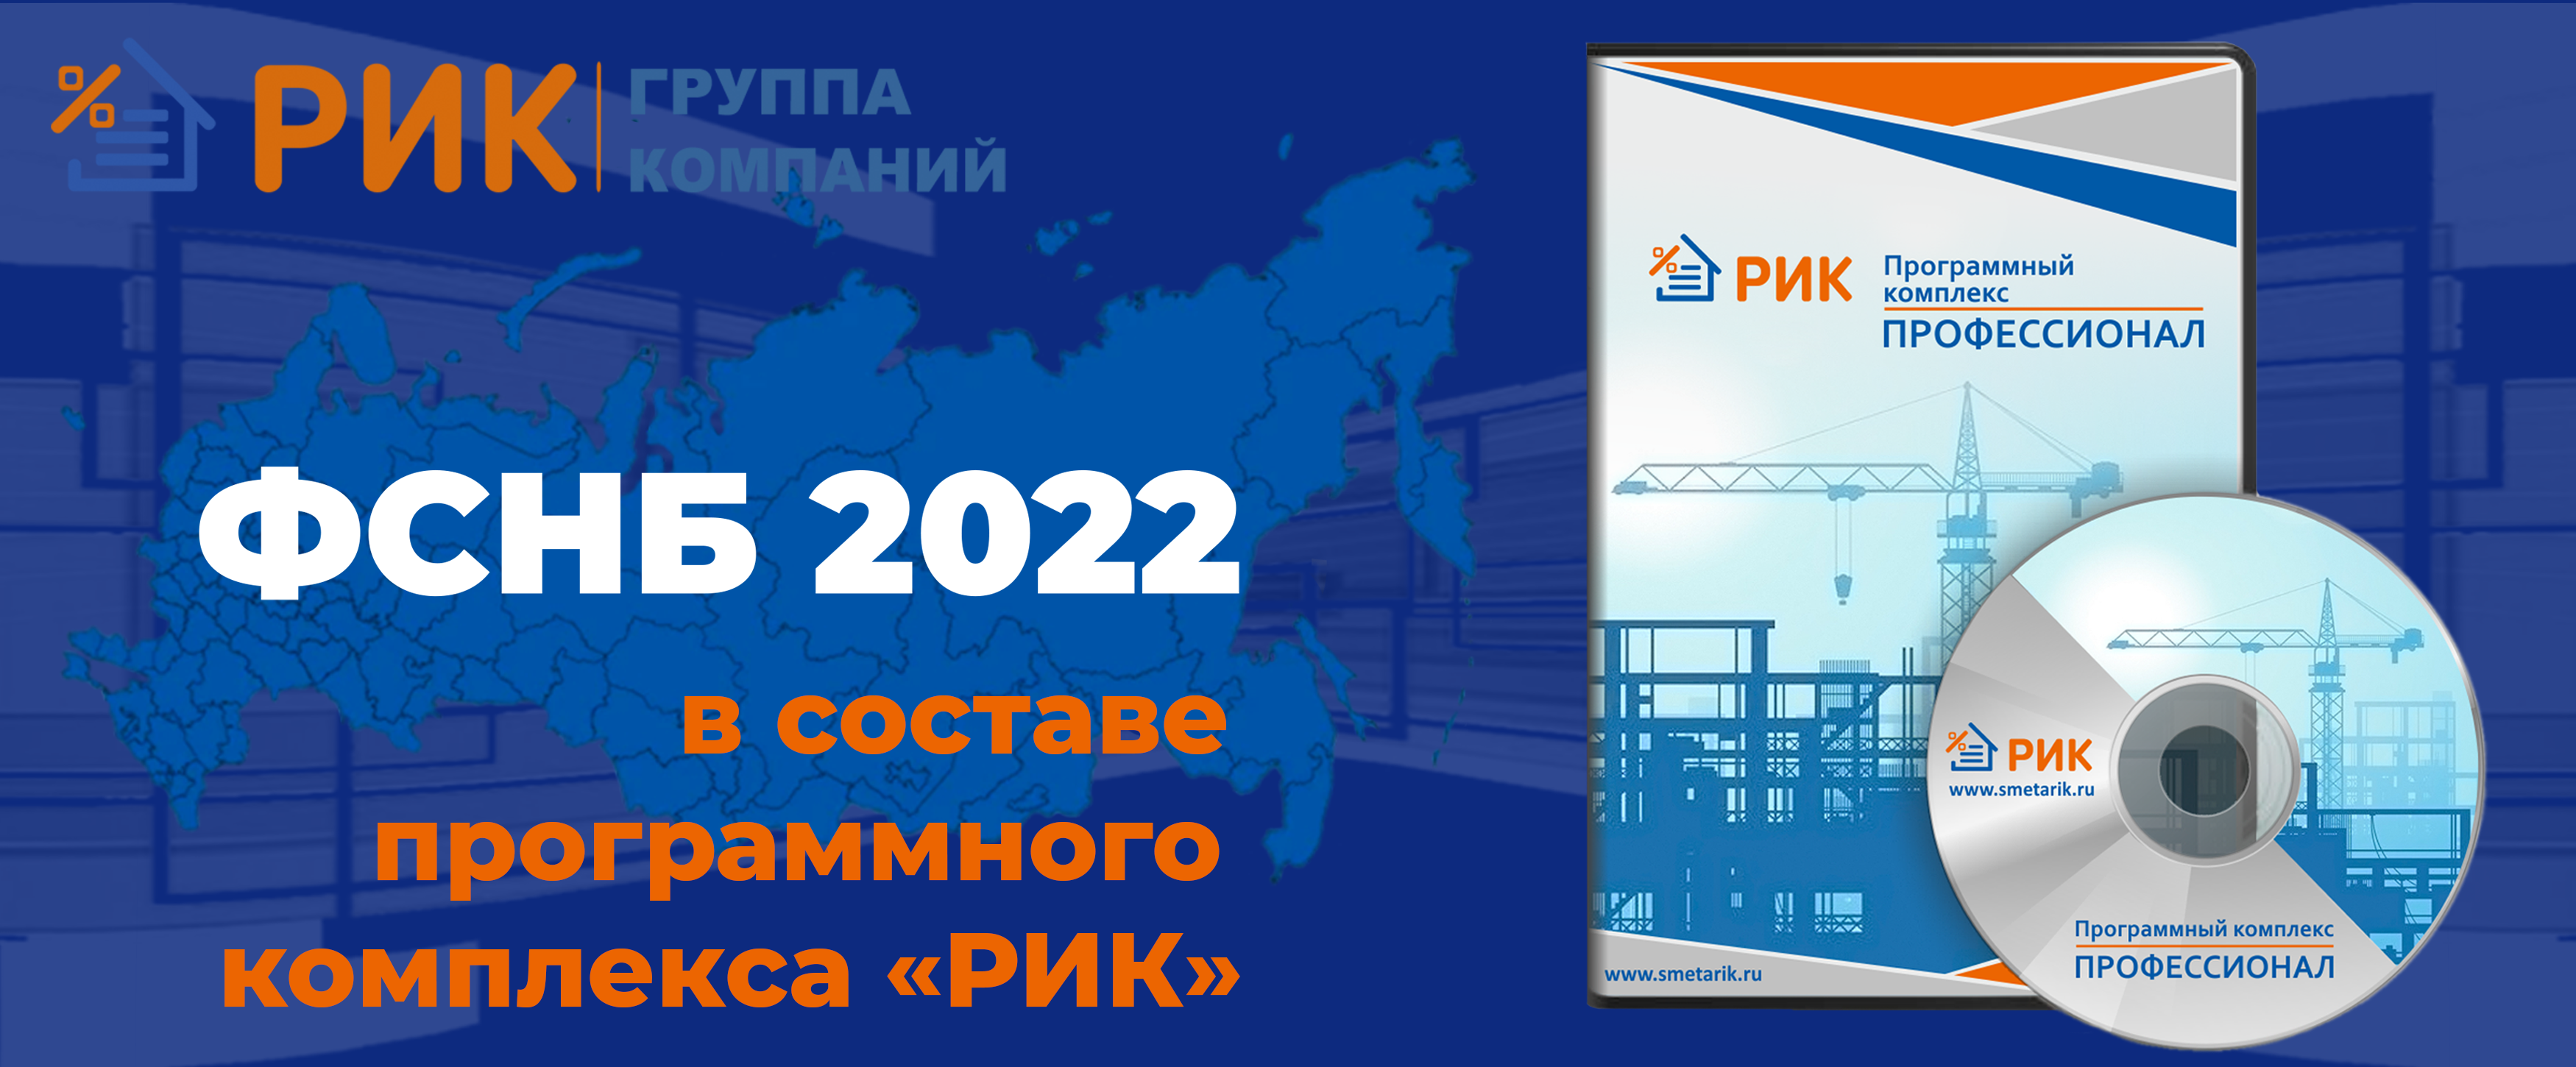 Сообщаем о поступлении в продажу нового сборника, Дополнения № 8 к ФСНБ-2022 в составе ПК «РИК»